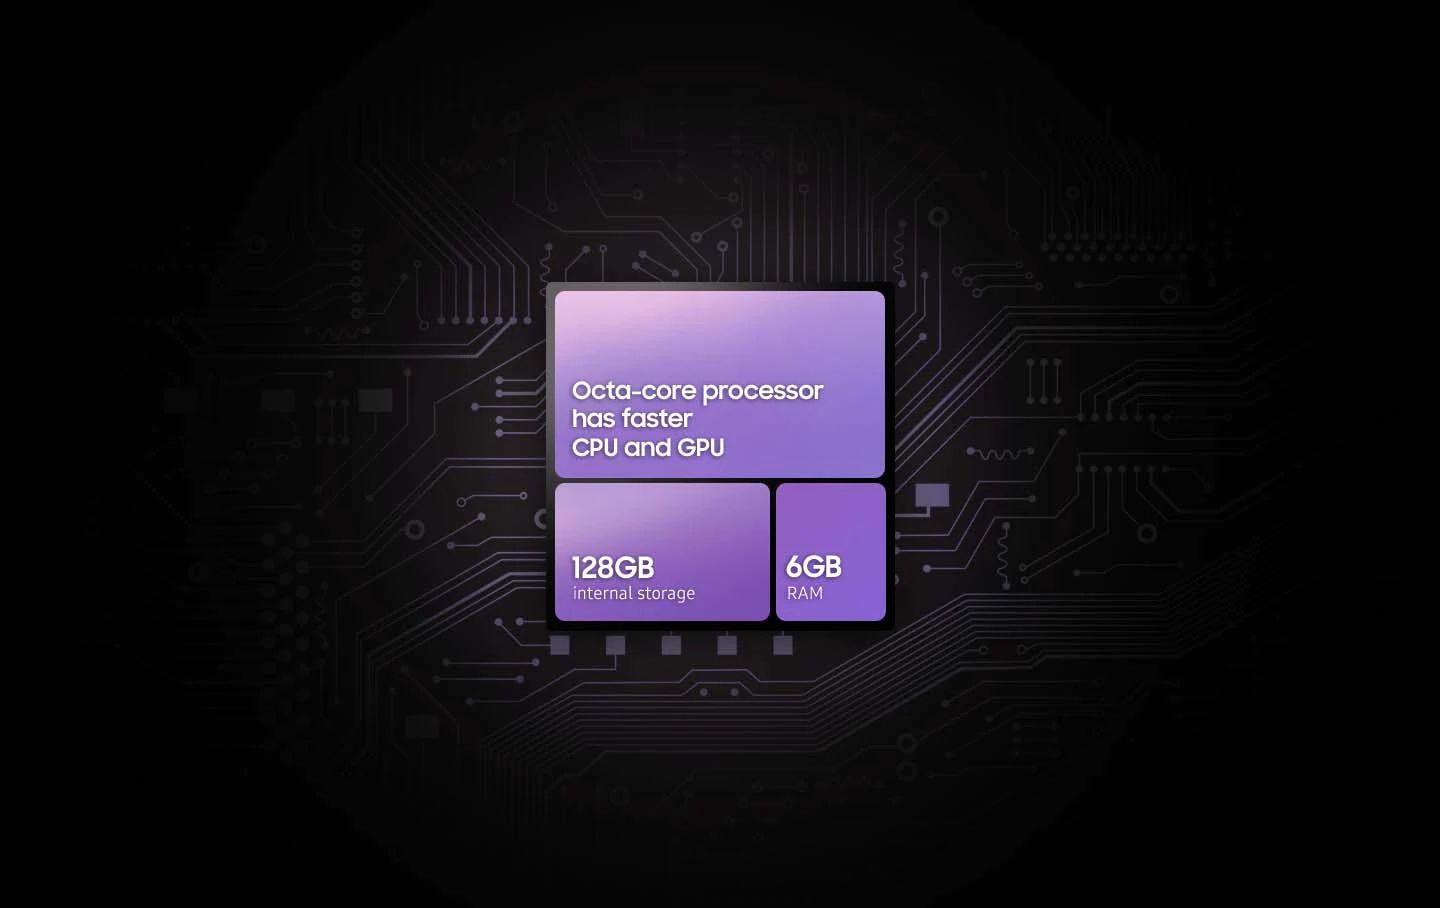 Hızlı performans için 5 nm Sekiz çekirdekli güçlü işlemci Galaxy M33 5G sahip olduğu Sekiz çekirdekli işlemci ve 6GB RAM ile çoklu görevlerde ve oyun oynarken ihtiyacınız olan gücü size fazlasıyla sunar.